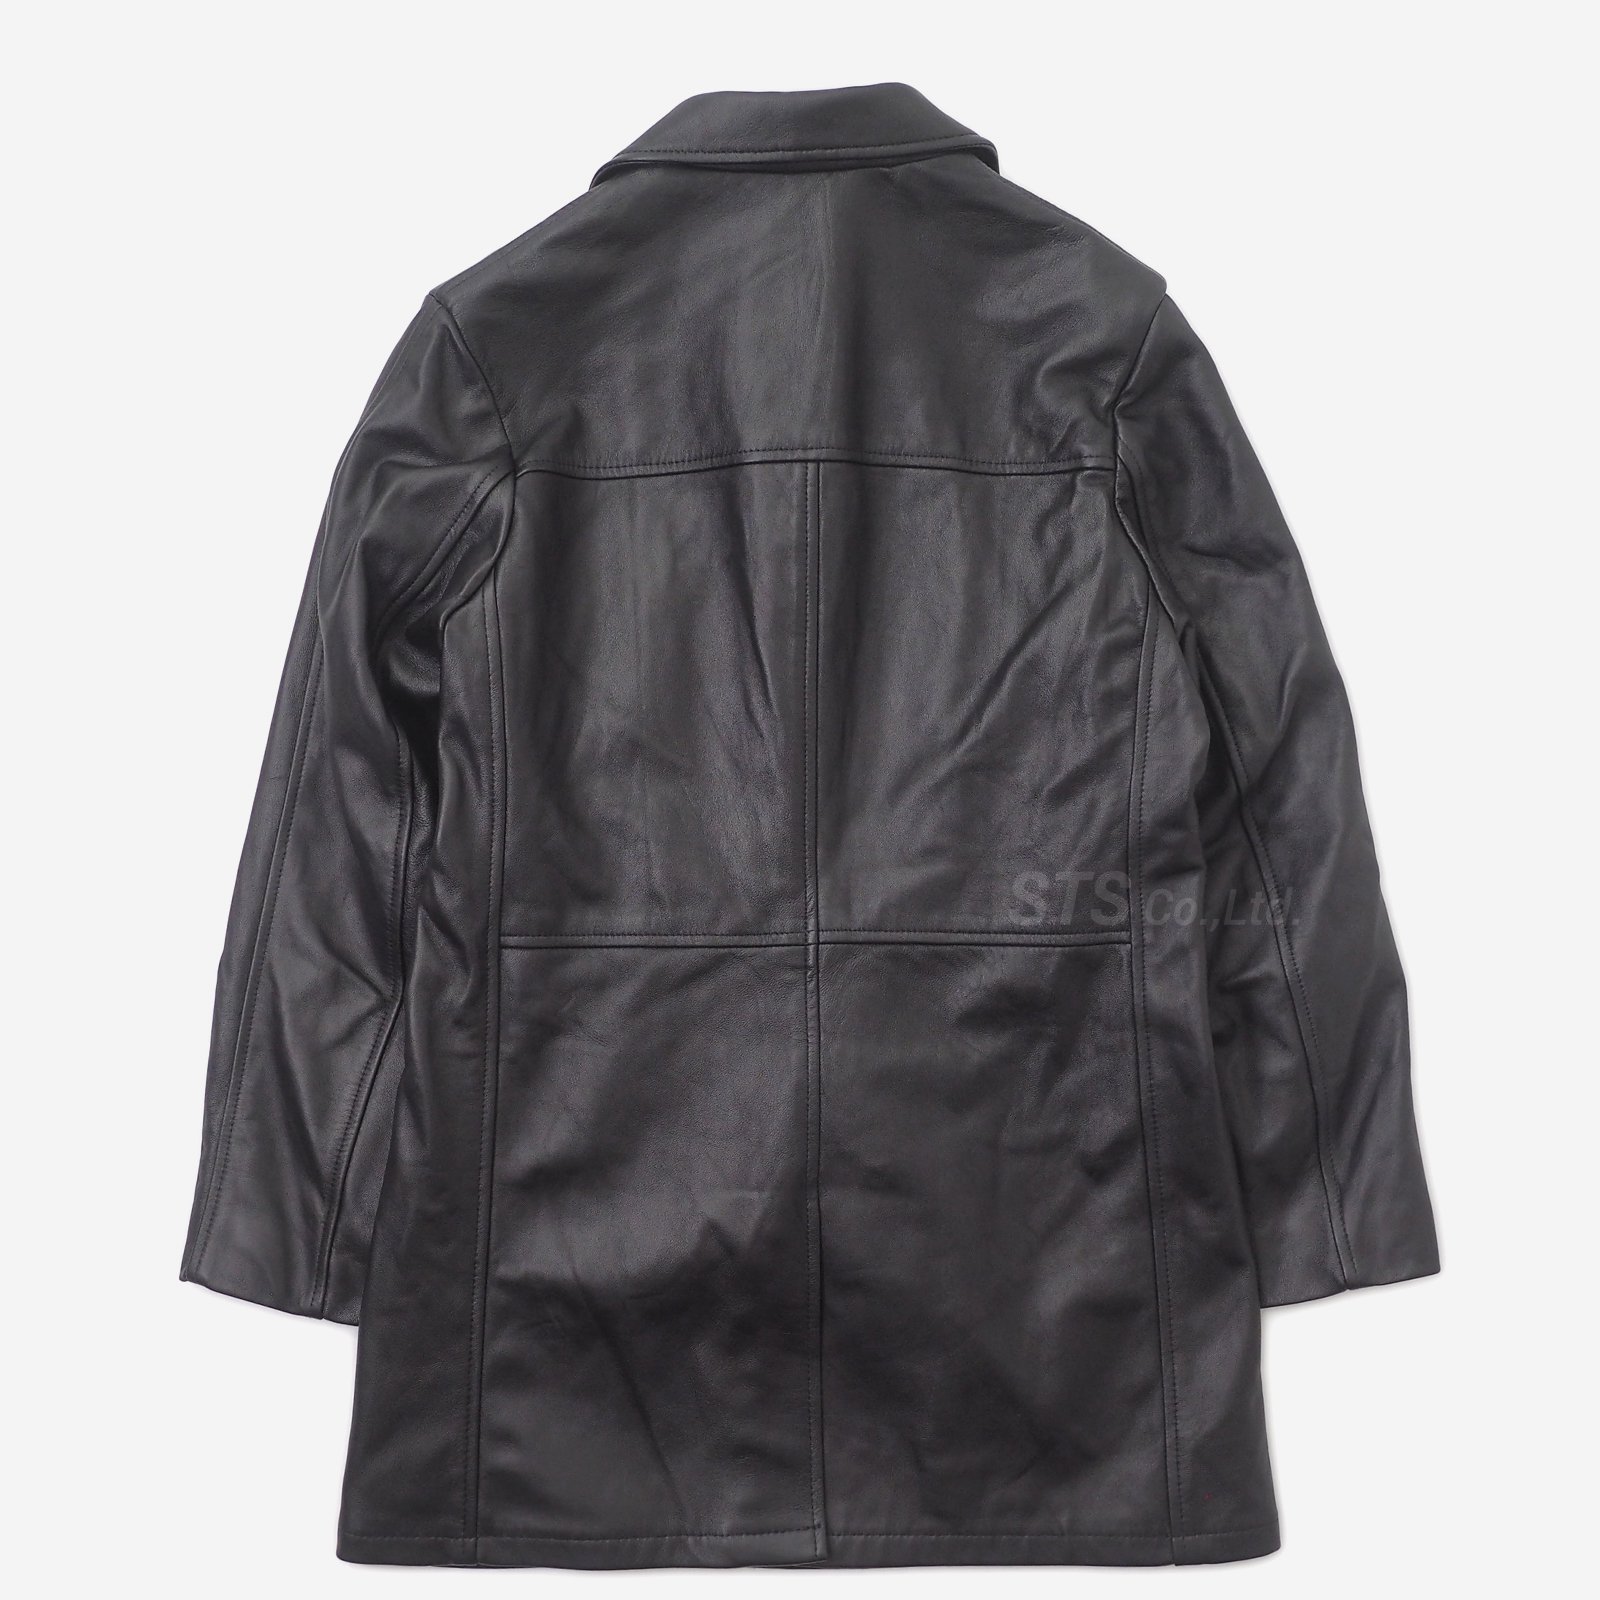 Supreme/Schott Leather Overcoat - UG.SHAFT